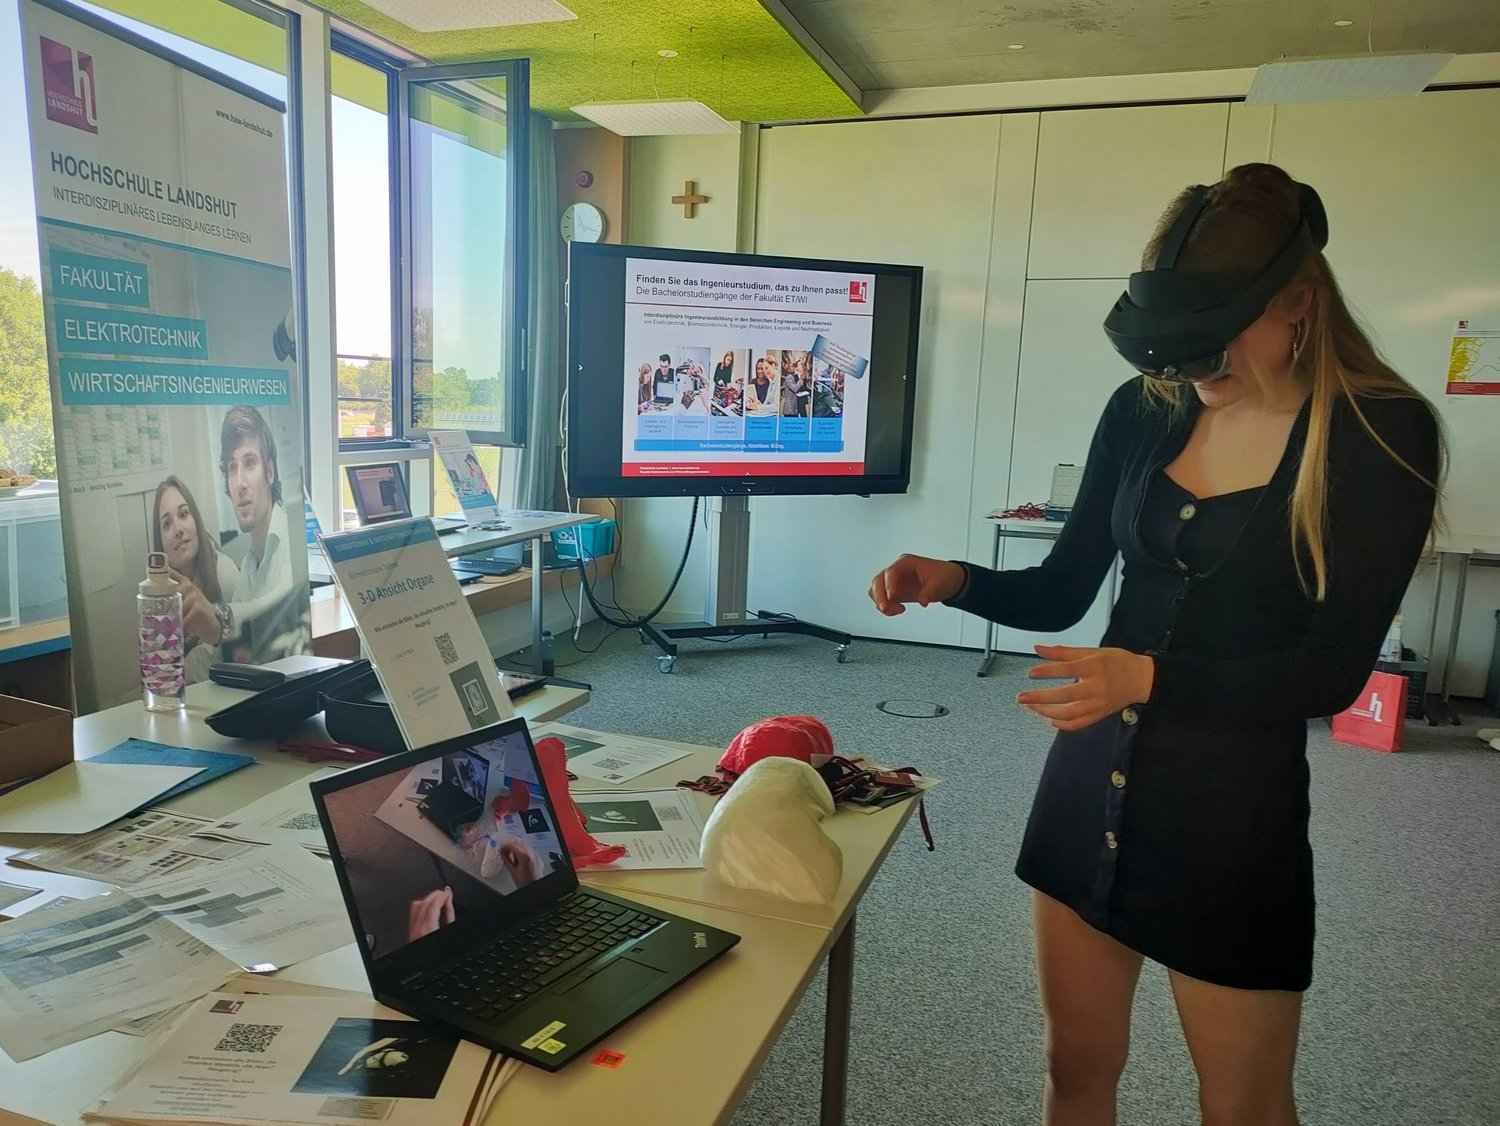 Schülerin mit VR-Brille testet Anwendung im Bereich biomedizinische Technik. Im Hintergrund Monitor, Roll up und Exponate. 